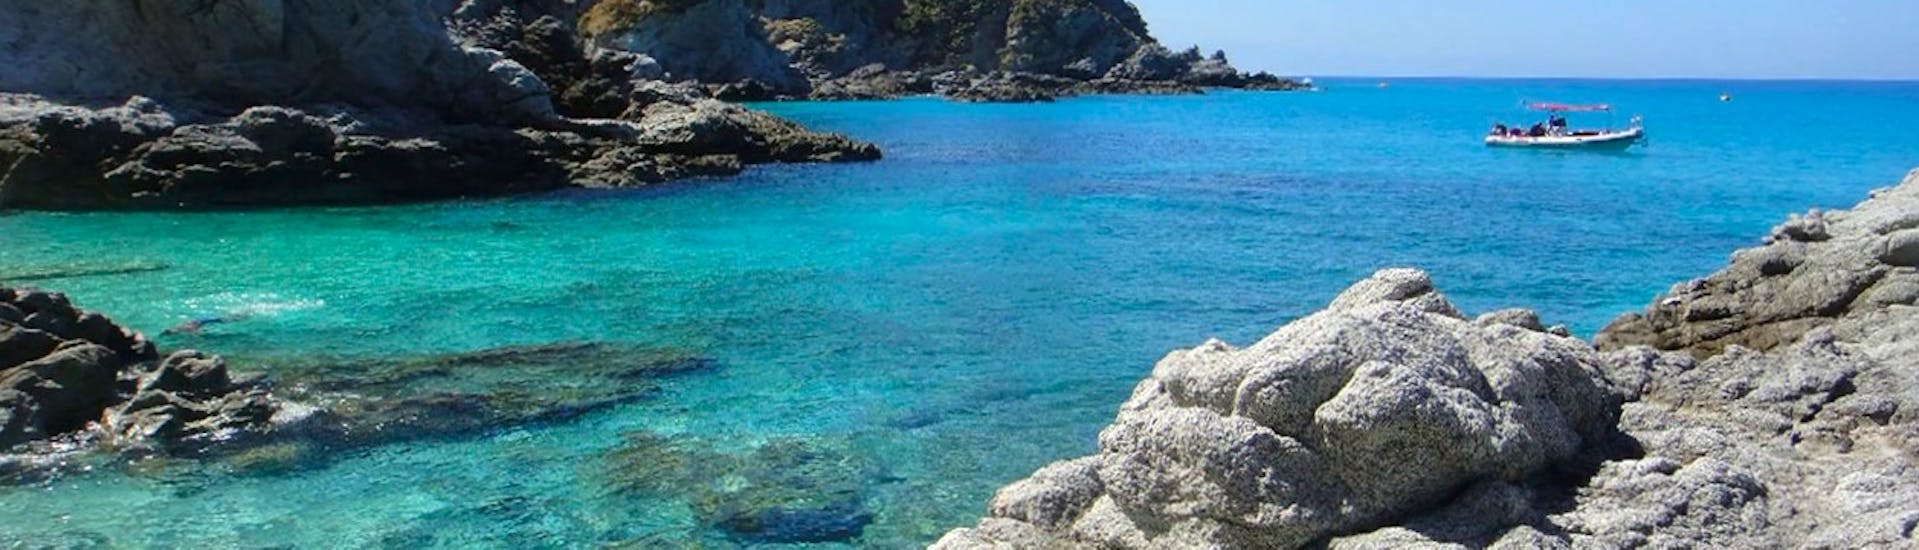 Le acque color smeraldo della Calabria che potete ammirare durante il Giro in gommone da Tropea lungo la Costa degli Dei.